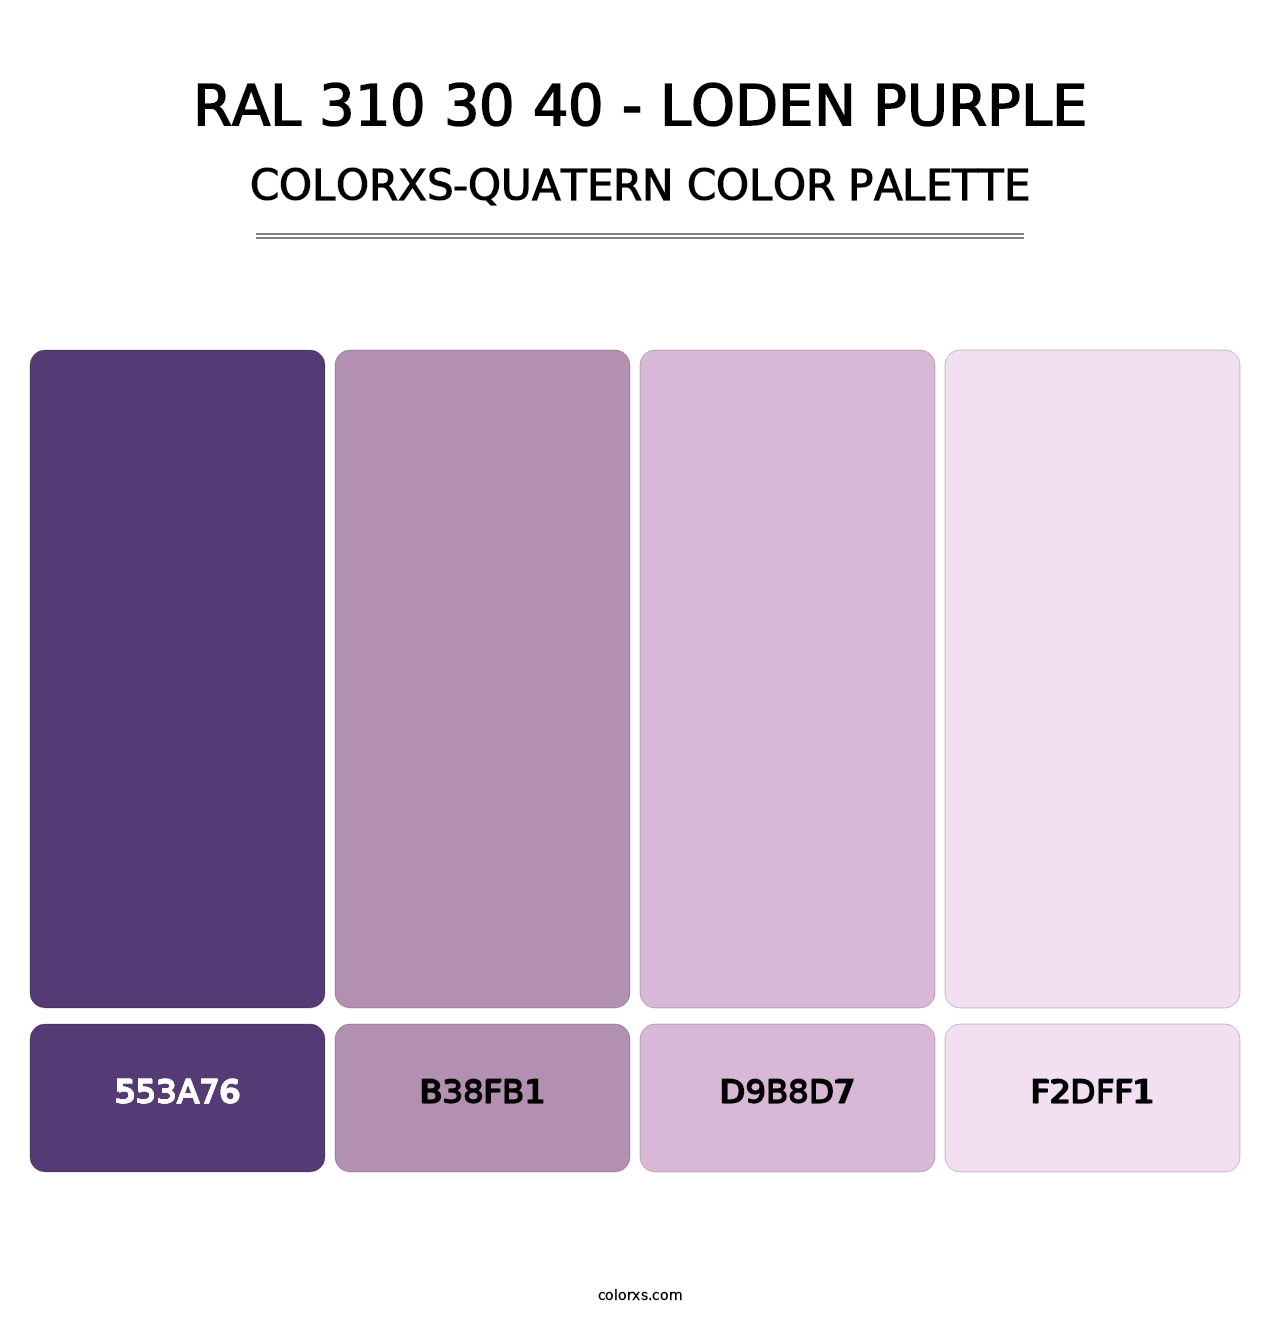 RAL 310 30 40 - Loden Purple - Colorxs Quatern Palette